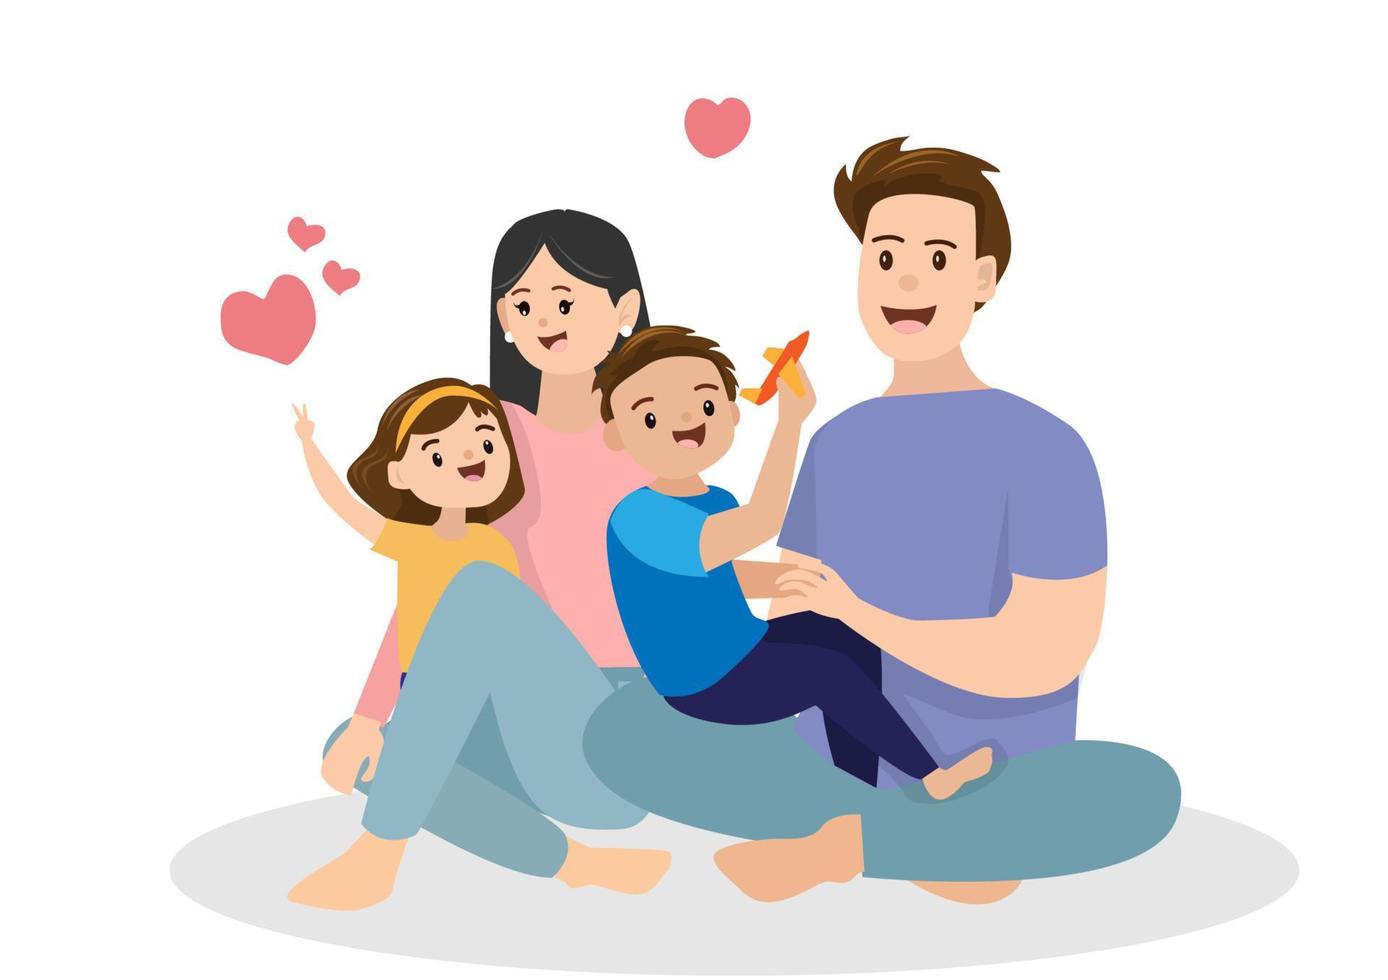 gelukkig gezin met samenwonen met ouders en kinderen hebben tijd om voor elkaar te zorgen, nauw in vlakke stijl cartoon illustratie vector